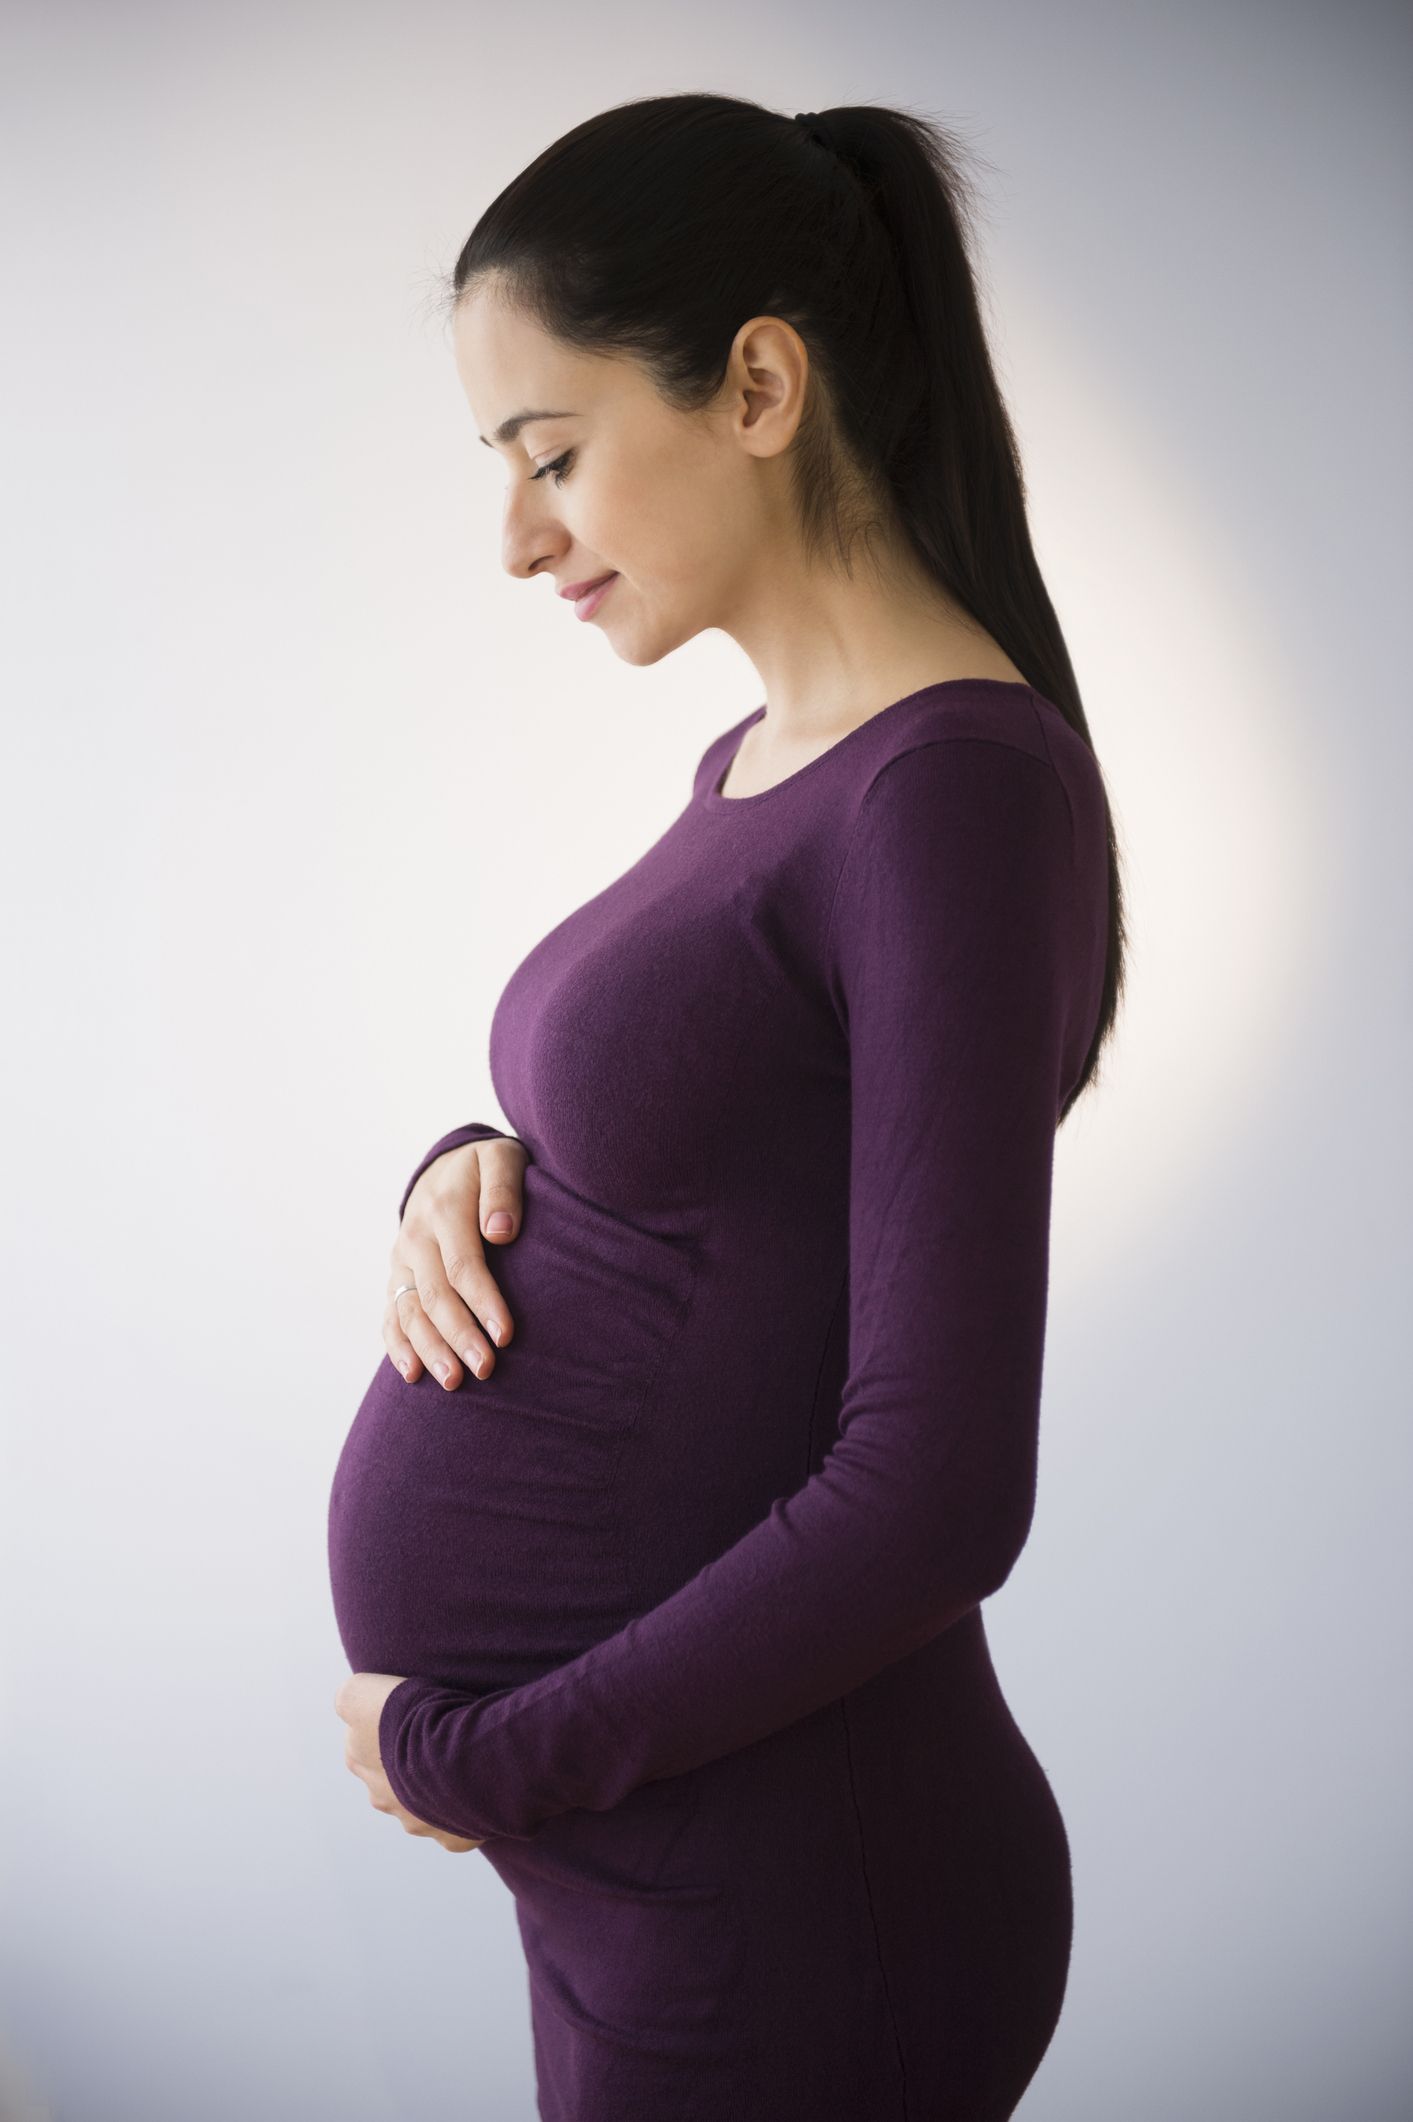 知っておきたい 子宮外妊娠 の基礎知識10